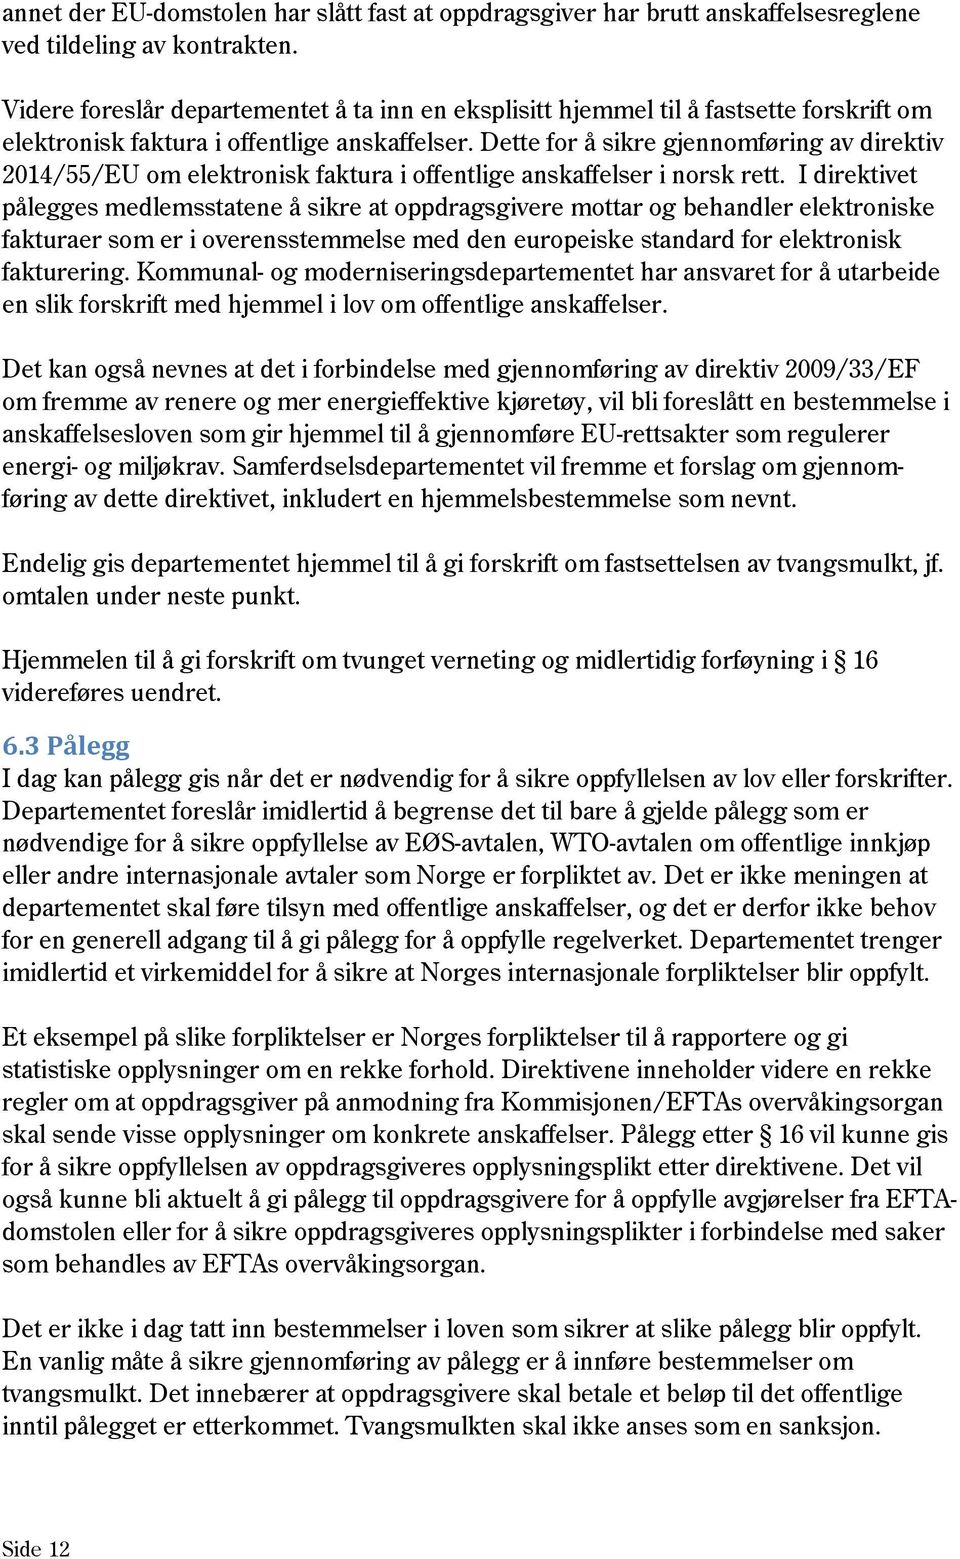 Dette for å sikre gjennomføring av direktiv 2014/55/EU om elektronisk faktura i offentlige anskaffelser i norsk rett.